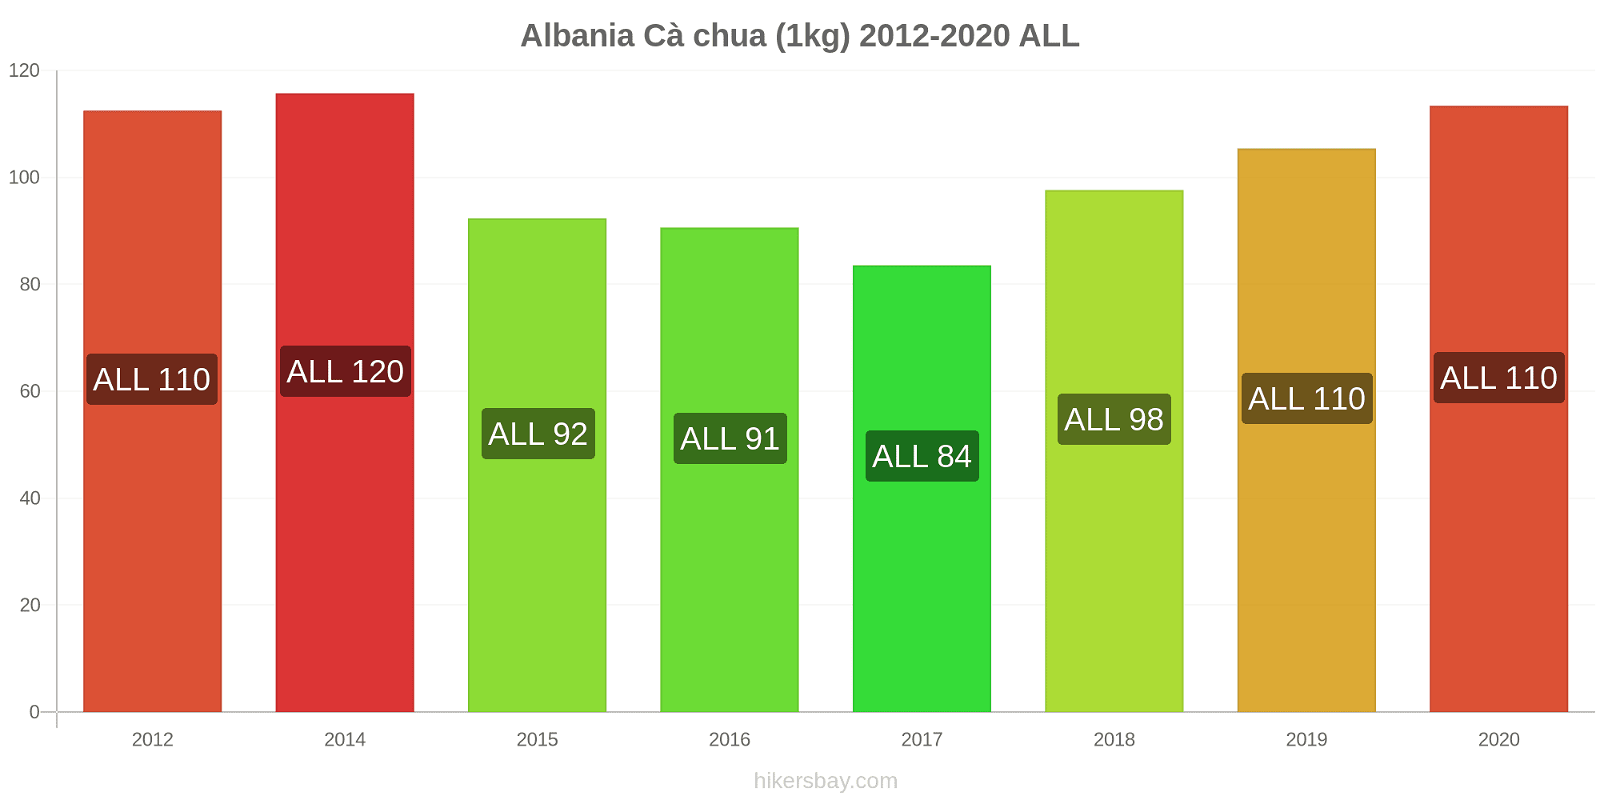 Albania thay đổi giá Cà chua (1kg) hikersbay.com